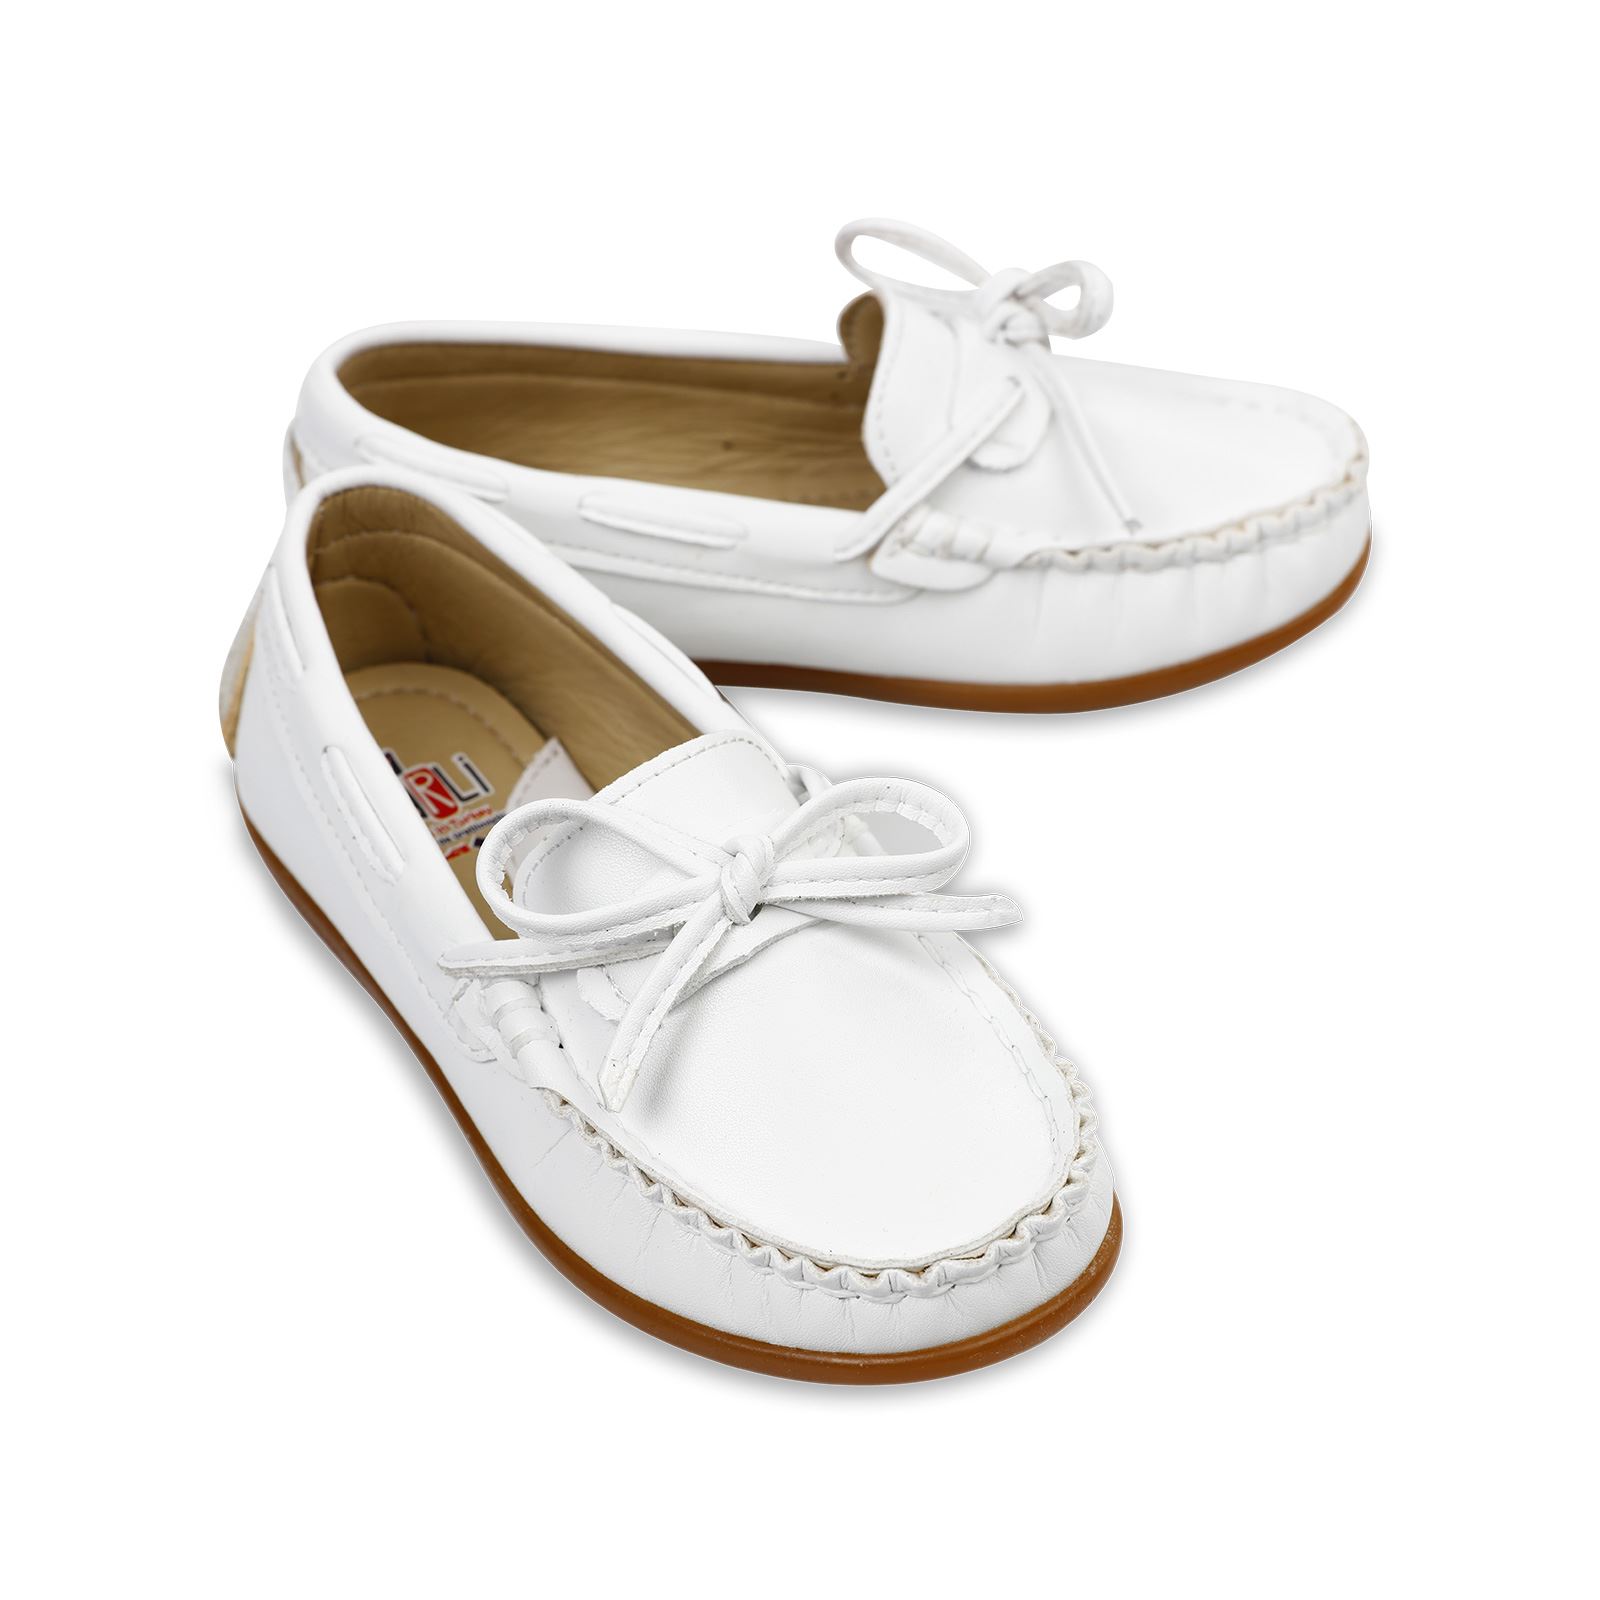 Harli Erkek Çocuk Klasik Ayakkabı 31-35 Numara Beyaz